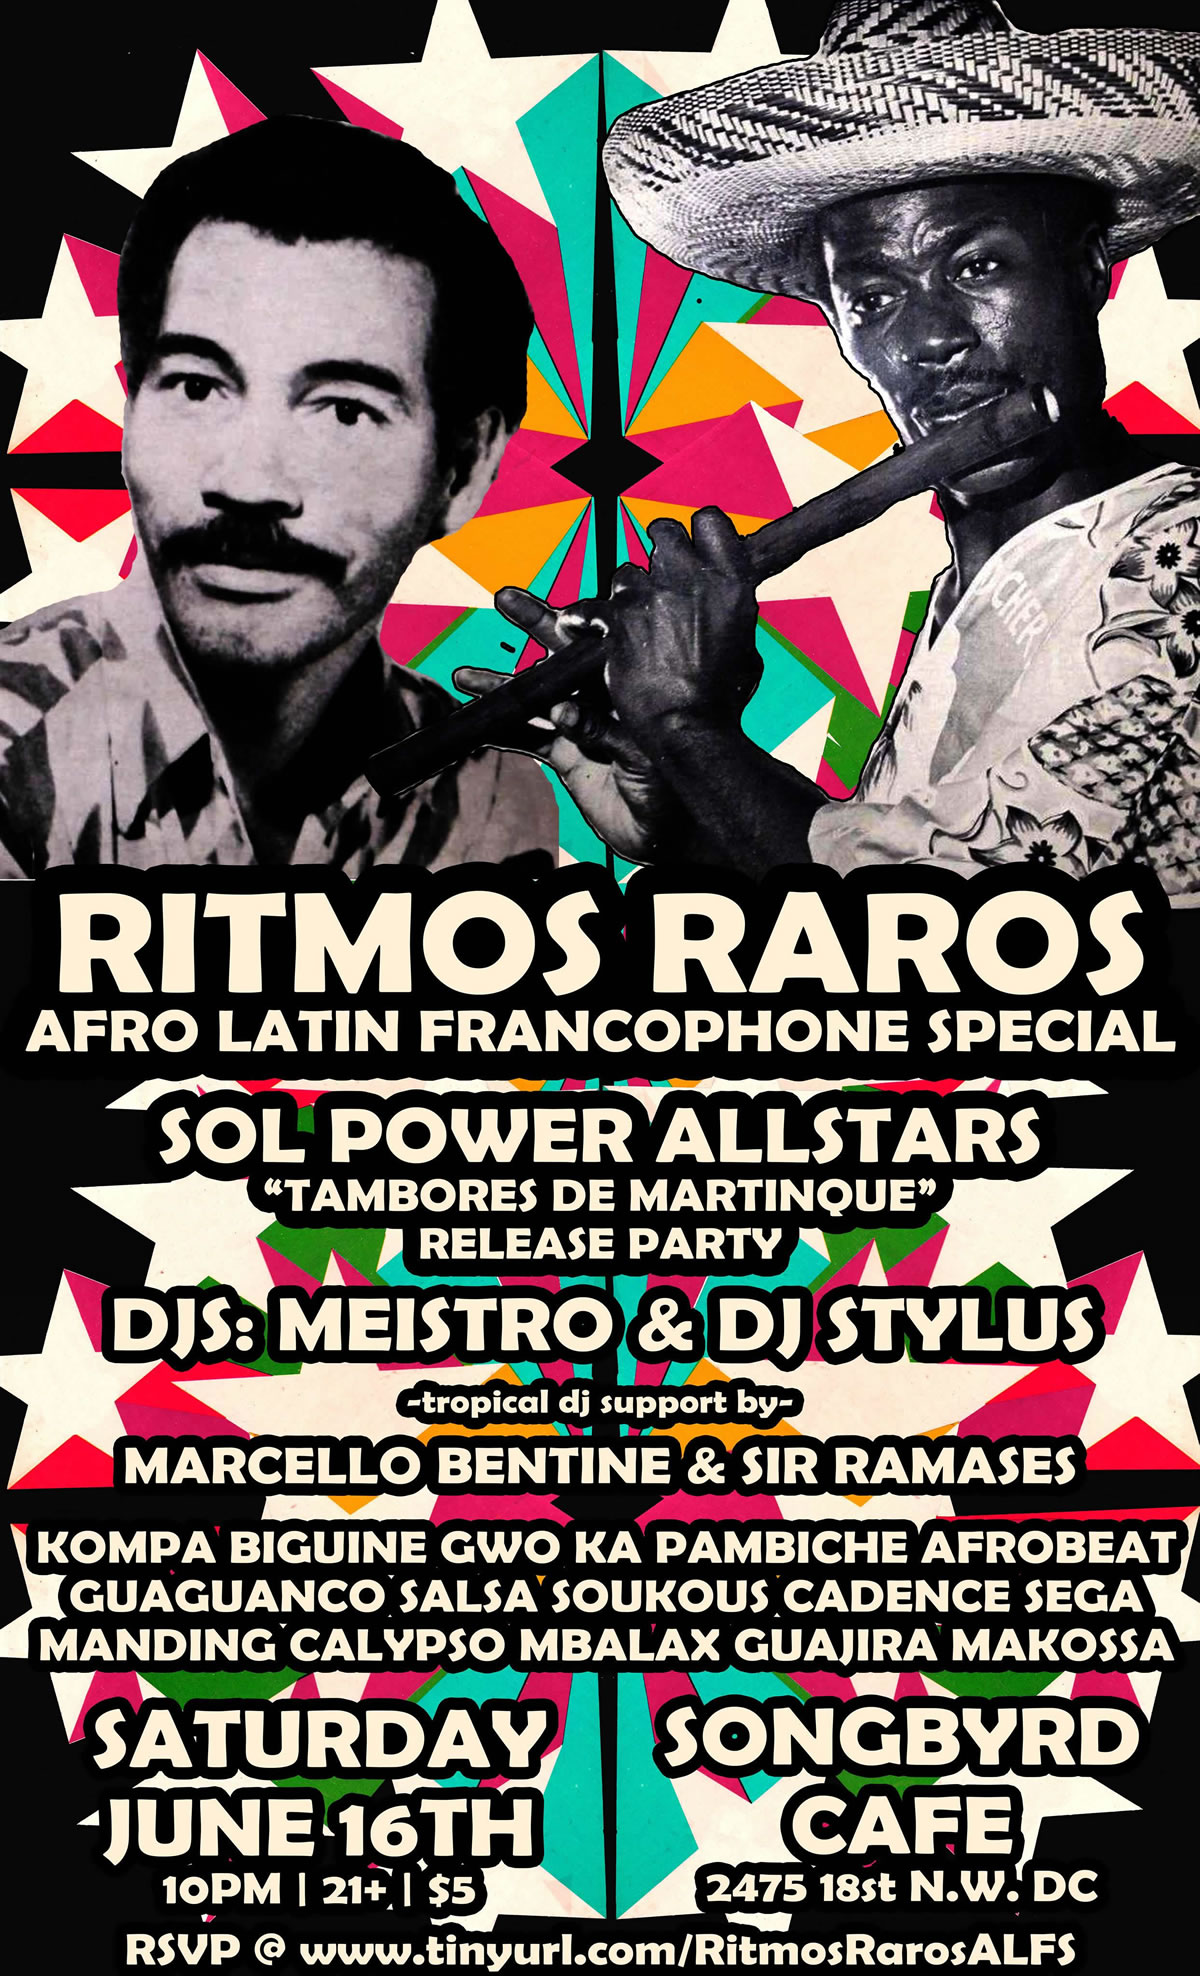 Ritmos Raros: Afro Latin Francophone Special: Sol Power EP Party